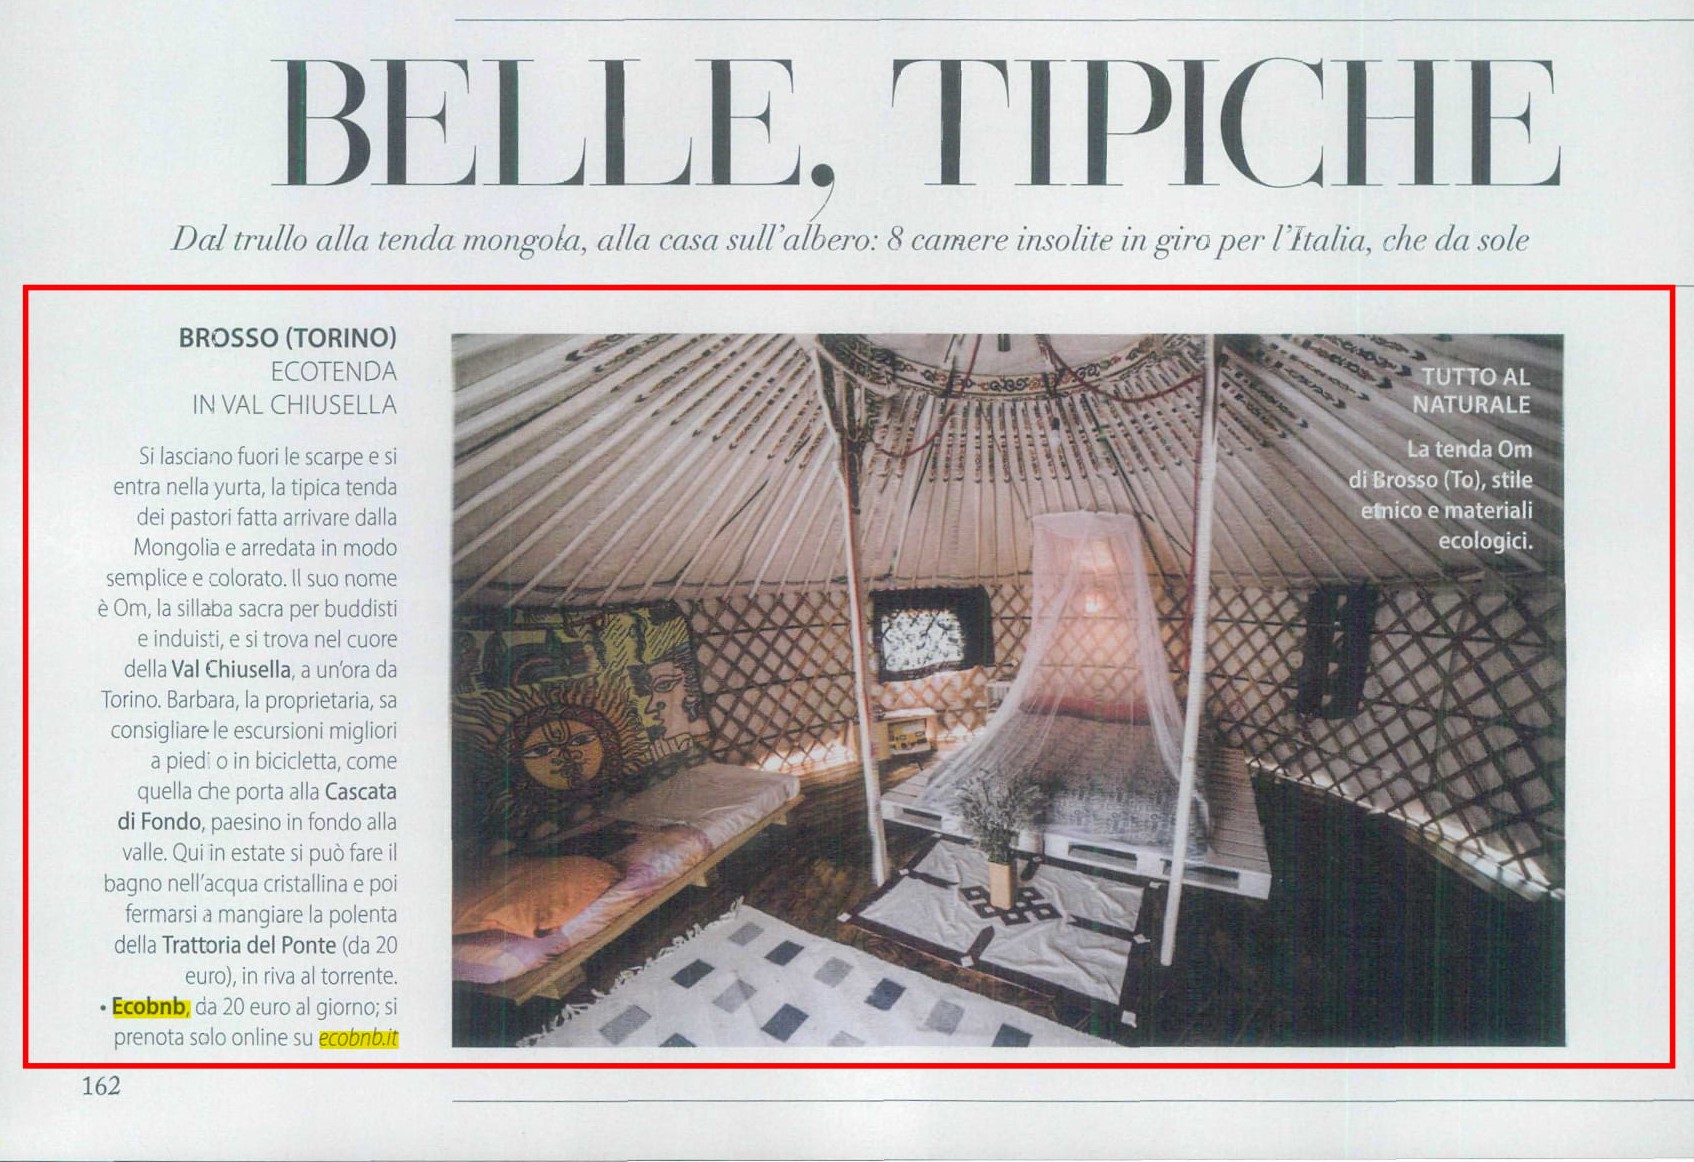 yurta in Val Chiusella, Ecobnb sulla rivista F